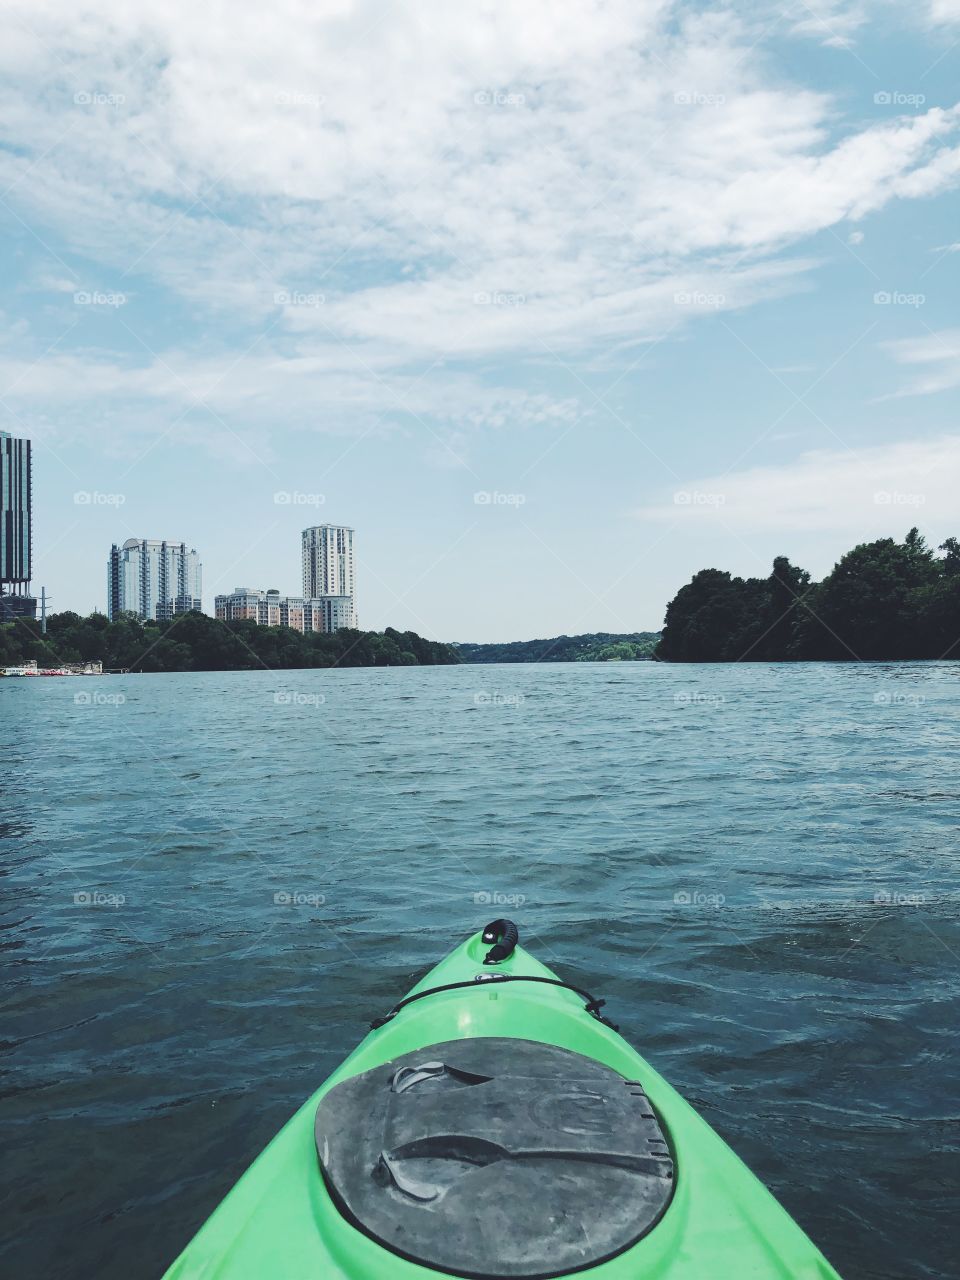 Kayaking on the Lake in Austin Texas